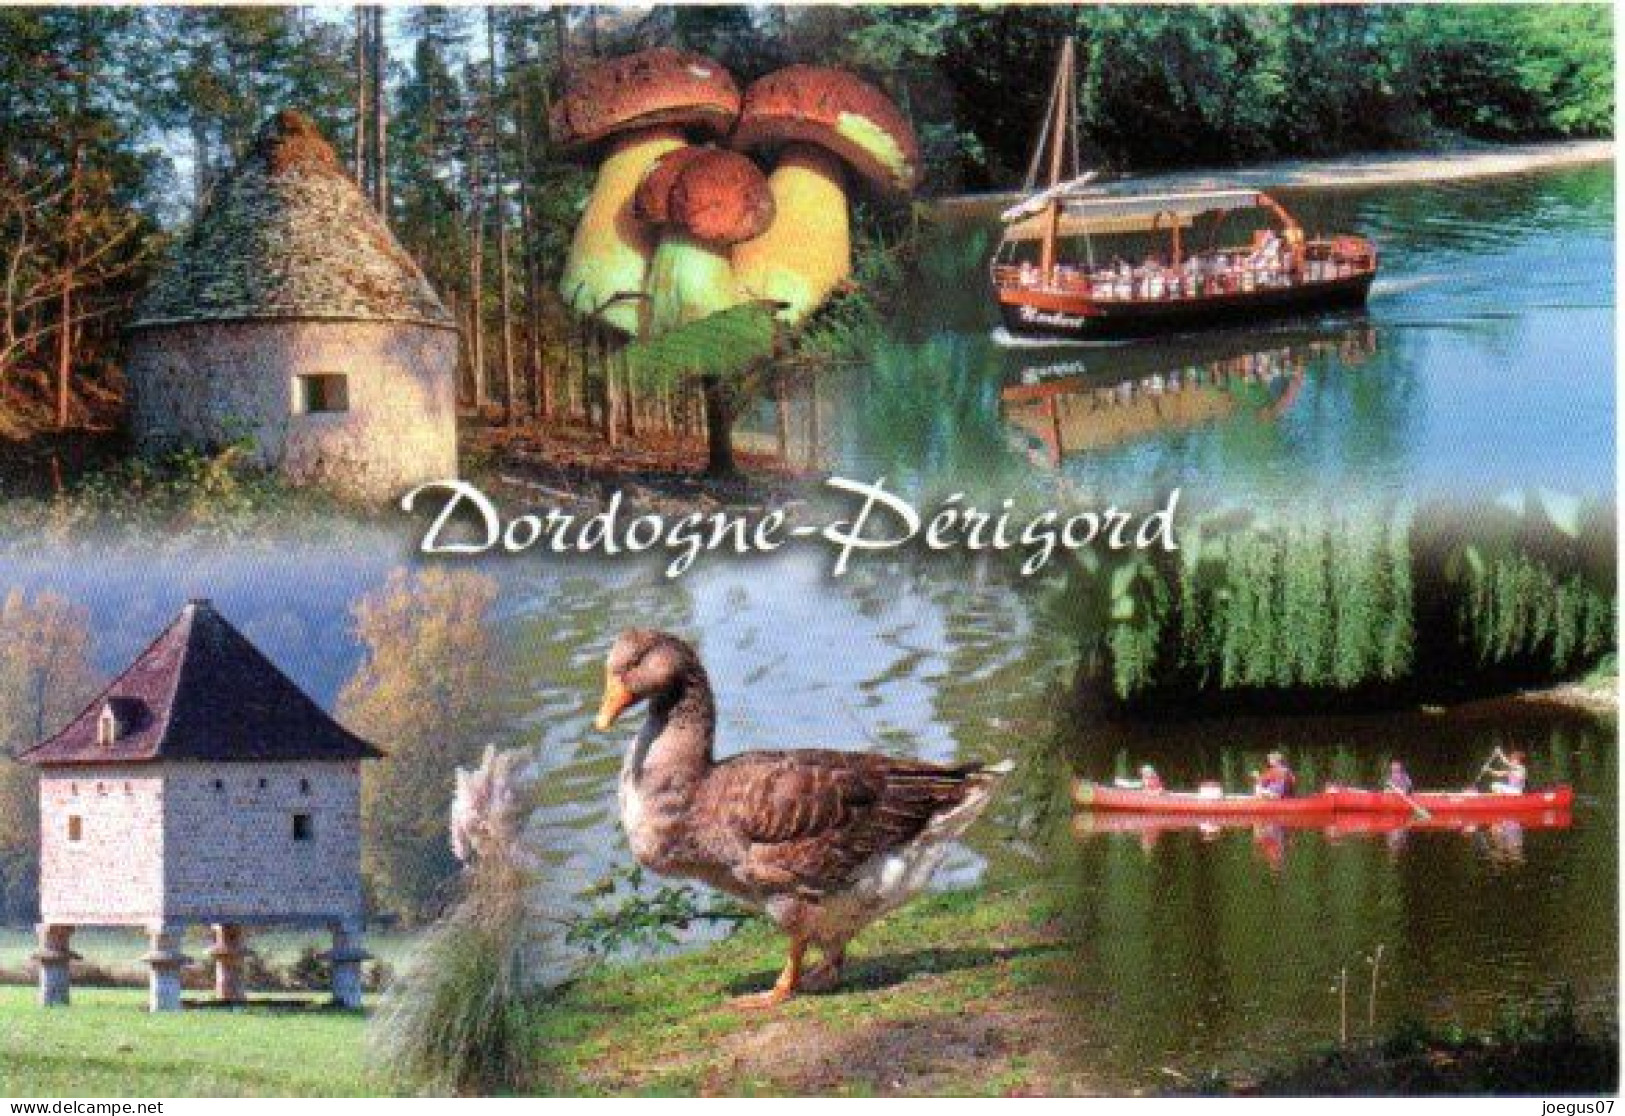 Dordogne-Périgord - Champignon, Cèpes. Borie. Pigeonnier. Gabarre Et Canoë Kayak. Oie - Editions MARCOU N° 24996 - Mushrooms